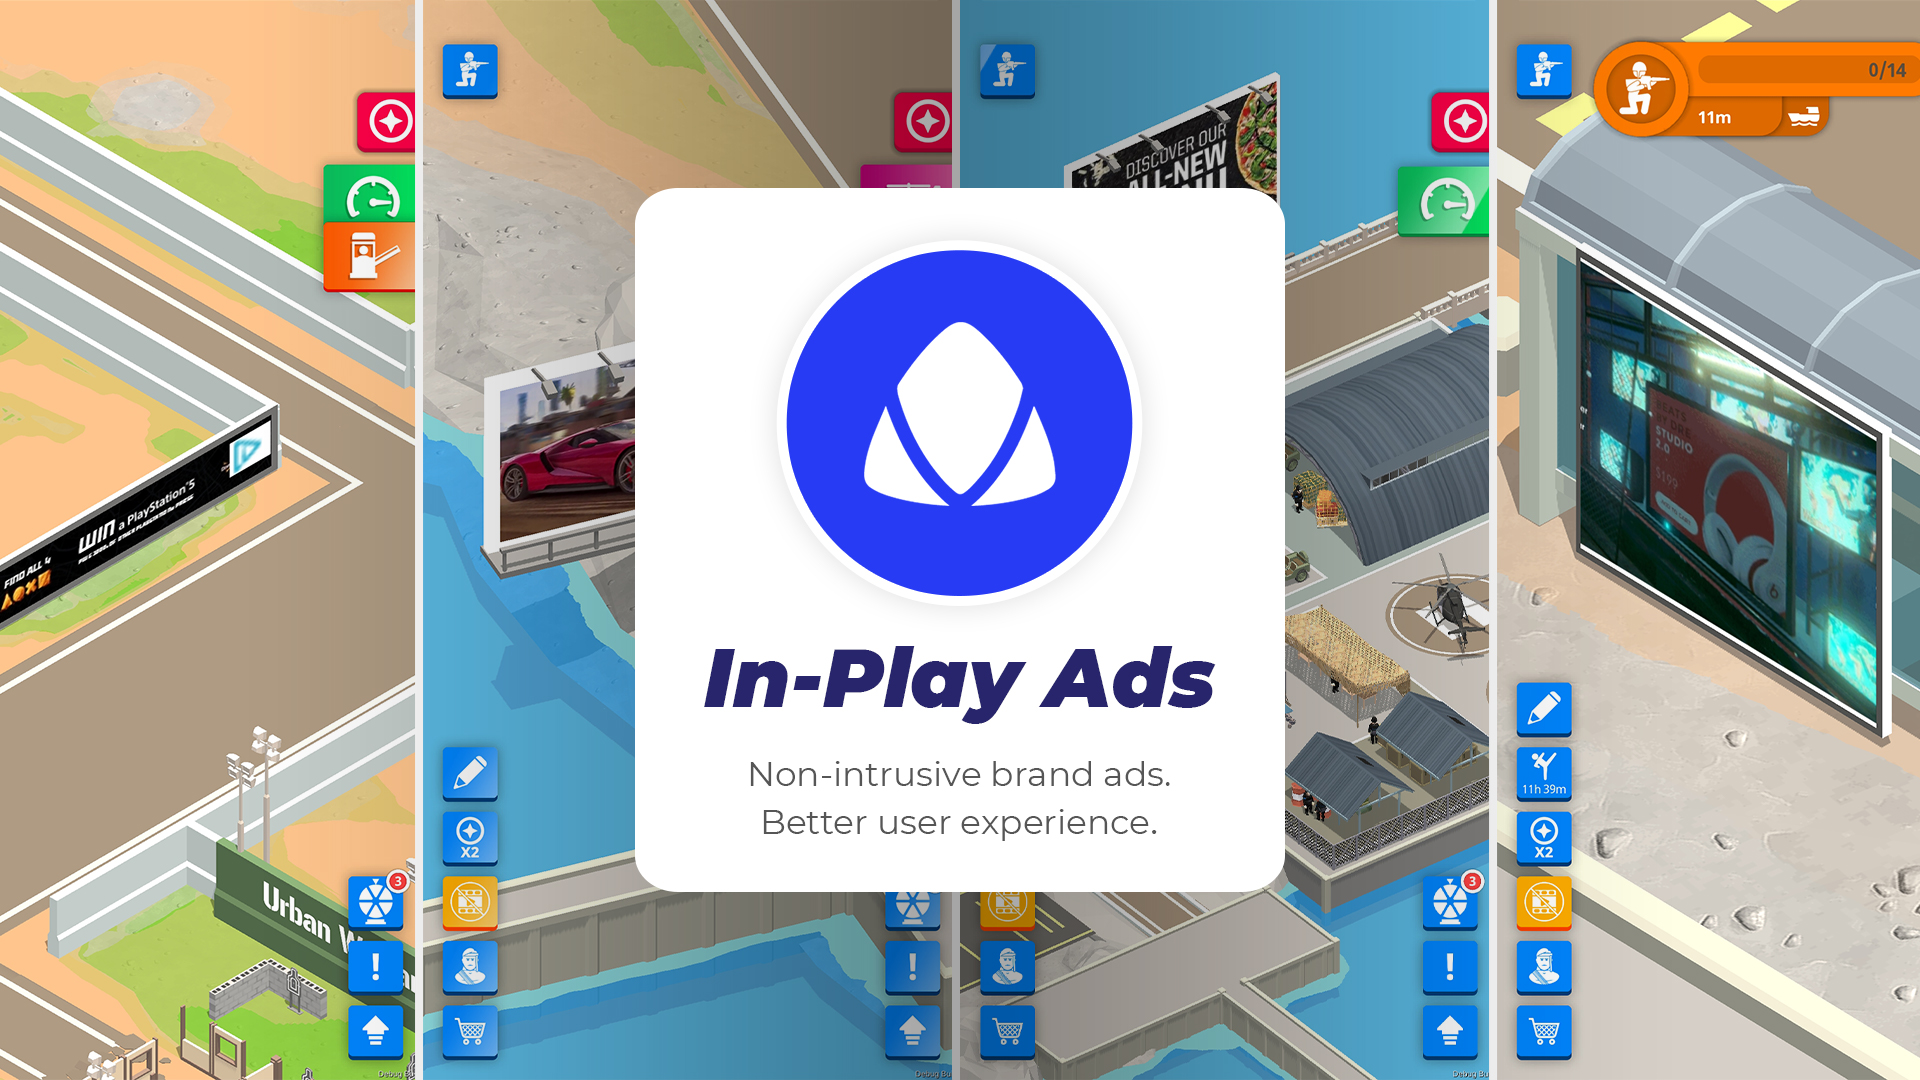 Adverty запускает первую в отрасли технологию потокового видео для In-Play рекламы